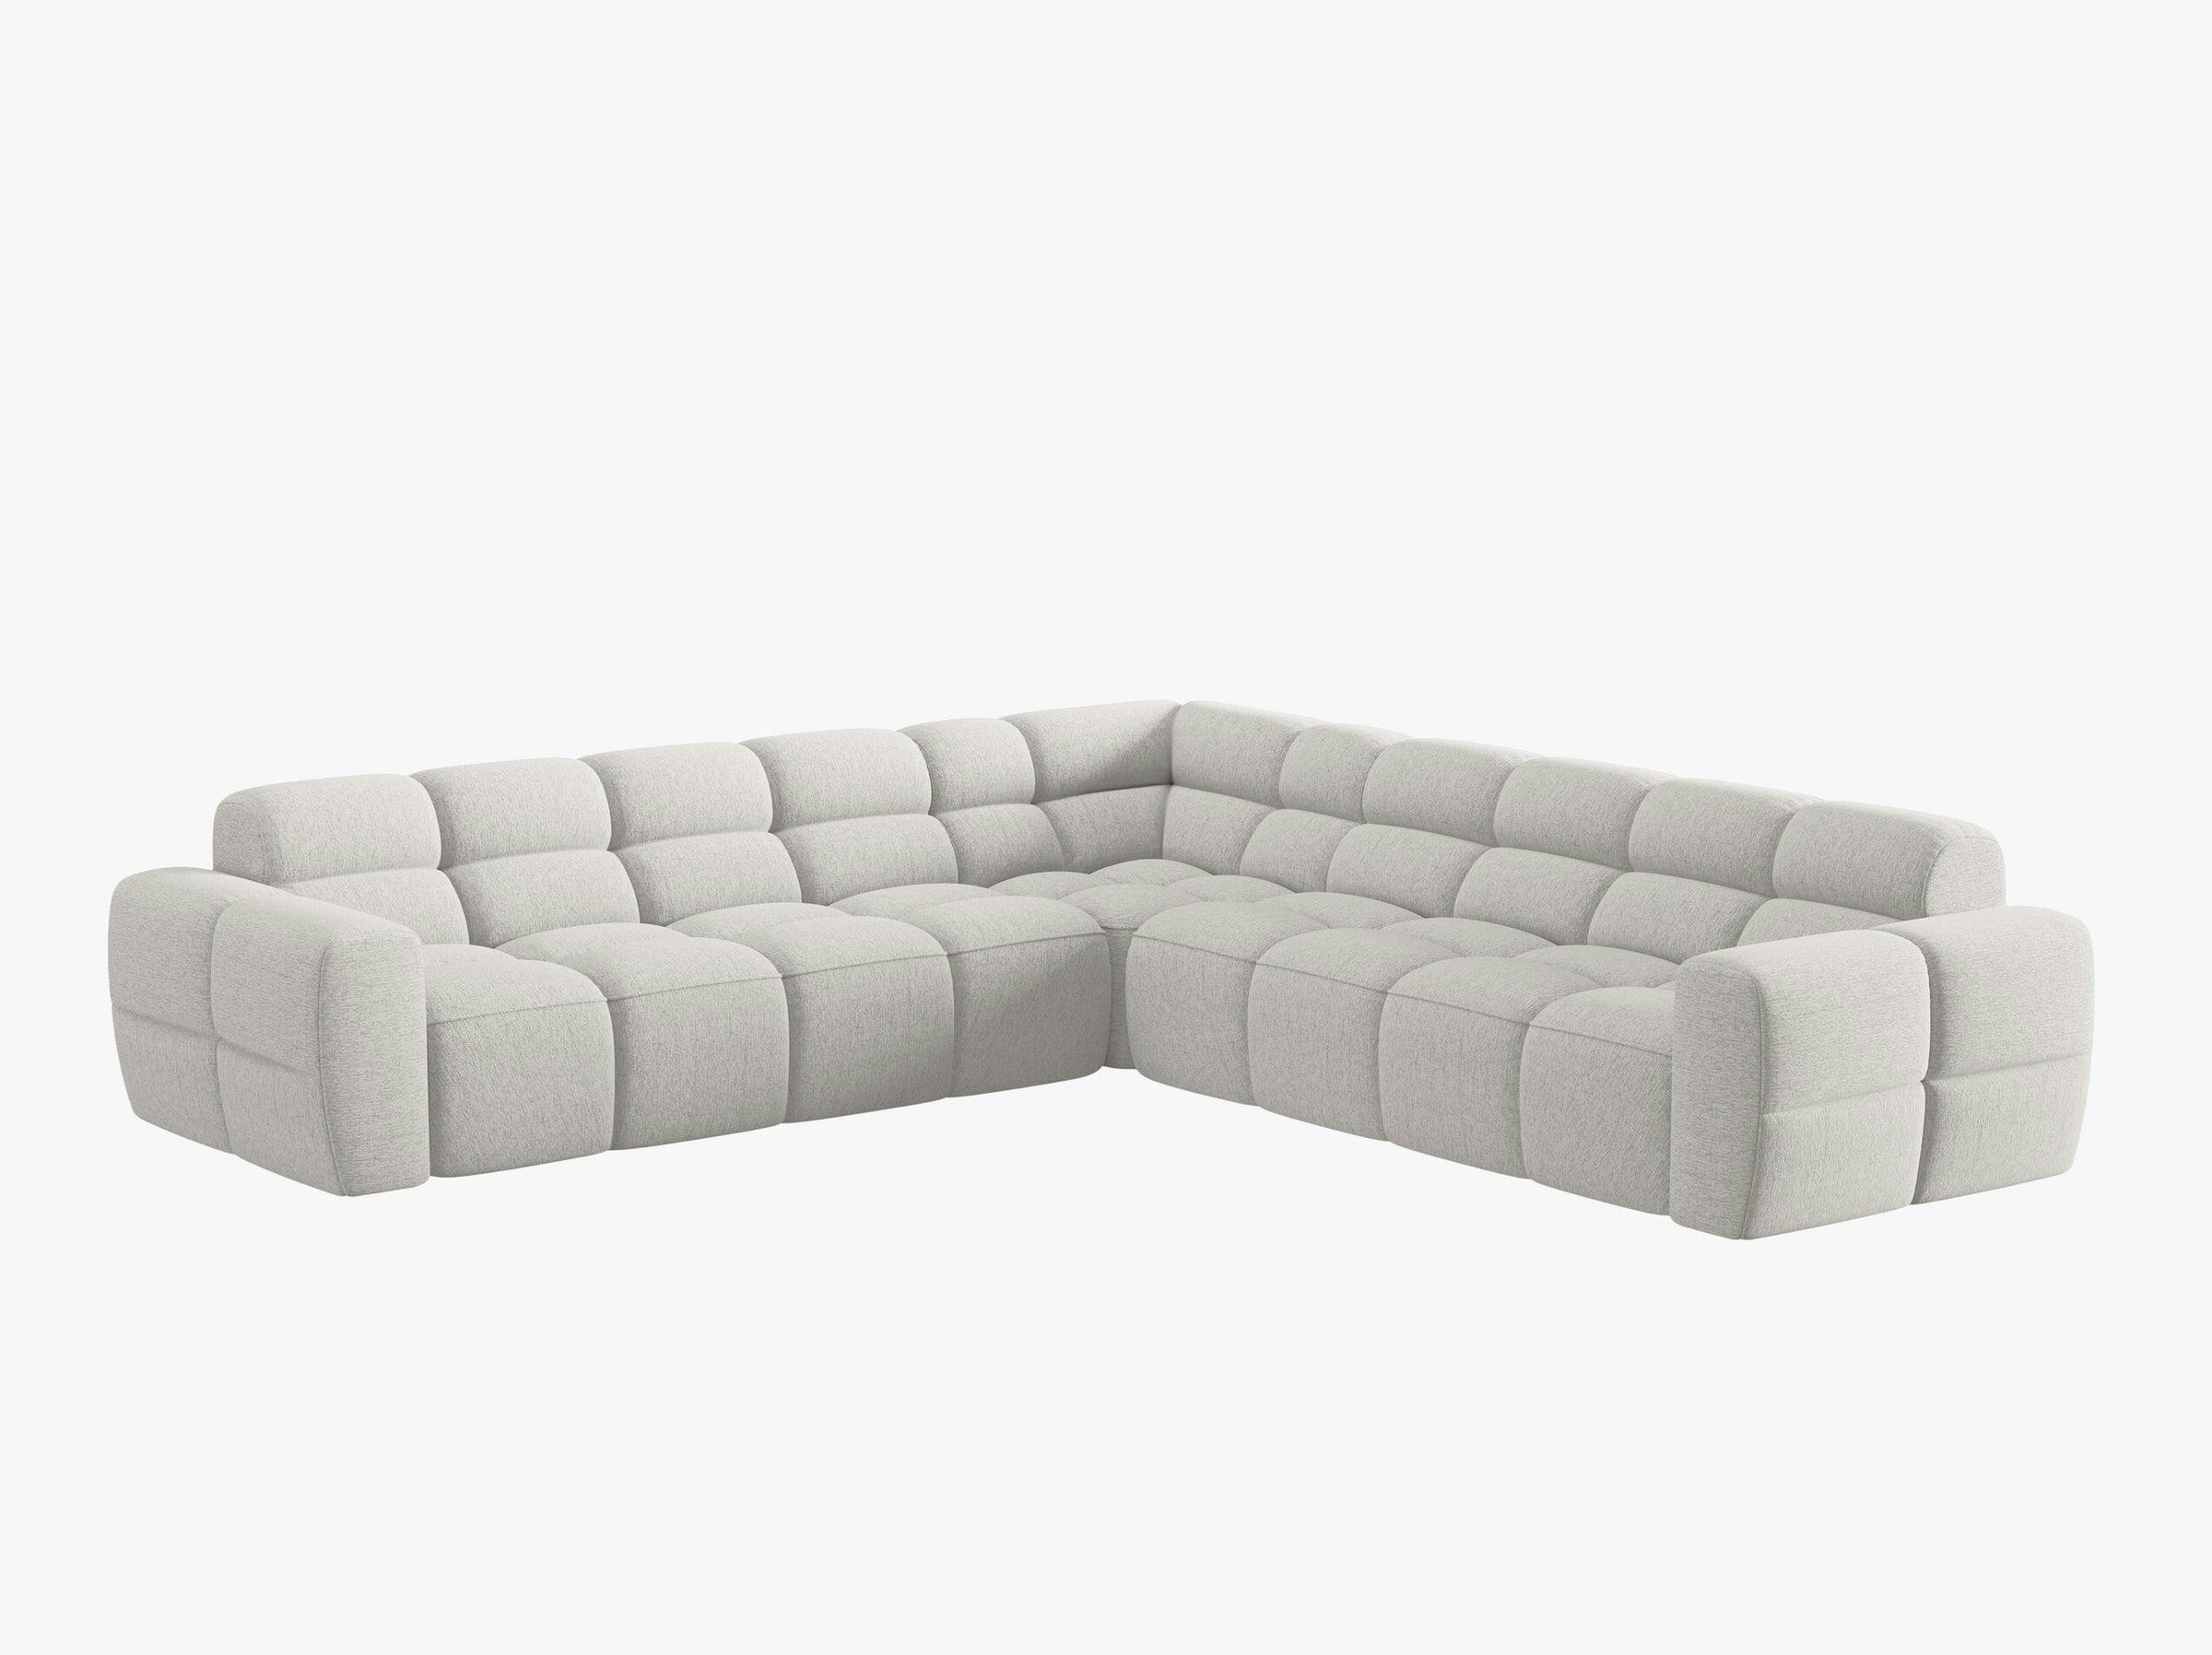 Lisa sofás tejido estructurado gris claro